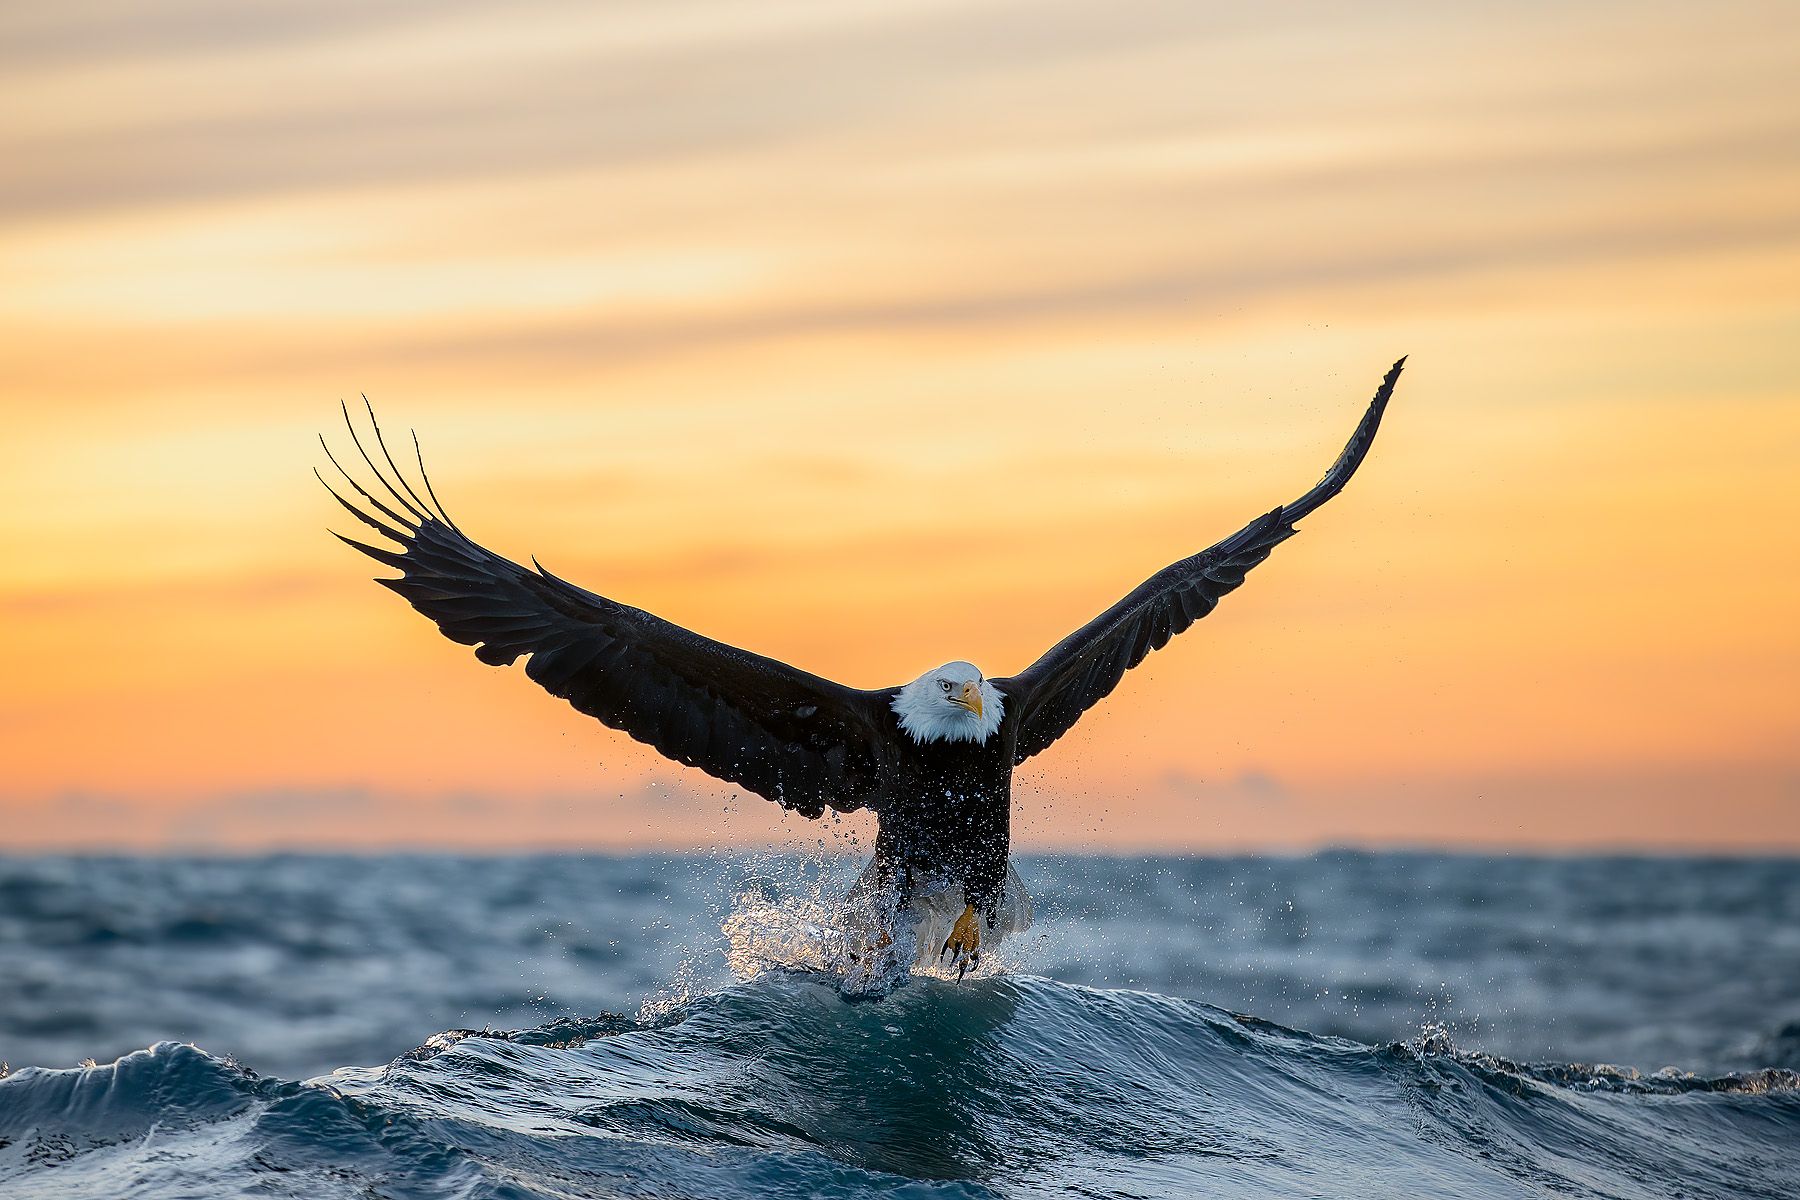 Clemens Vanderwerf_Bald eagle cresting wave at sunset .JPG